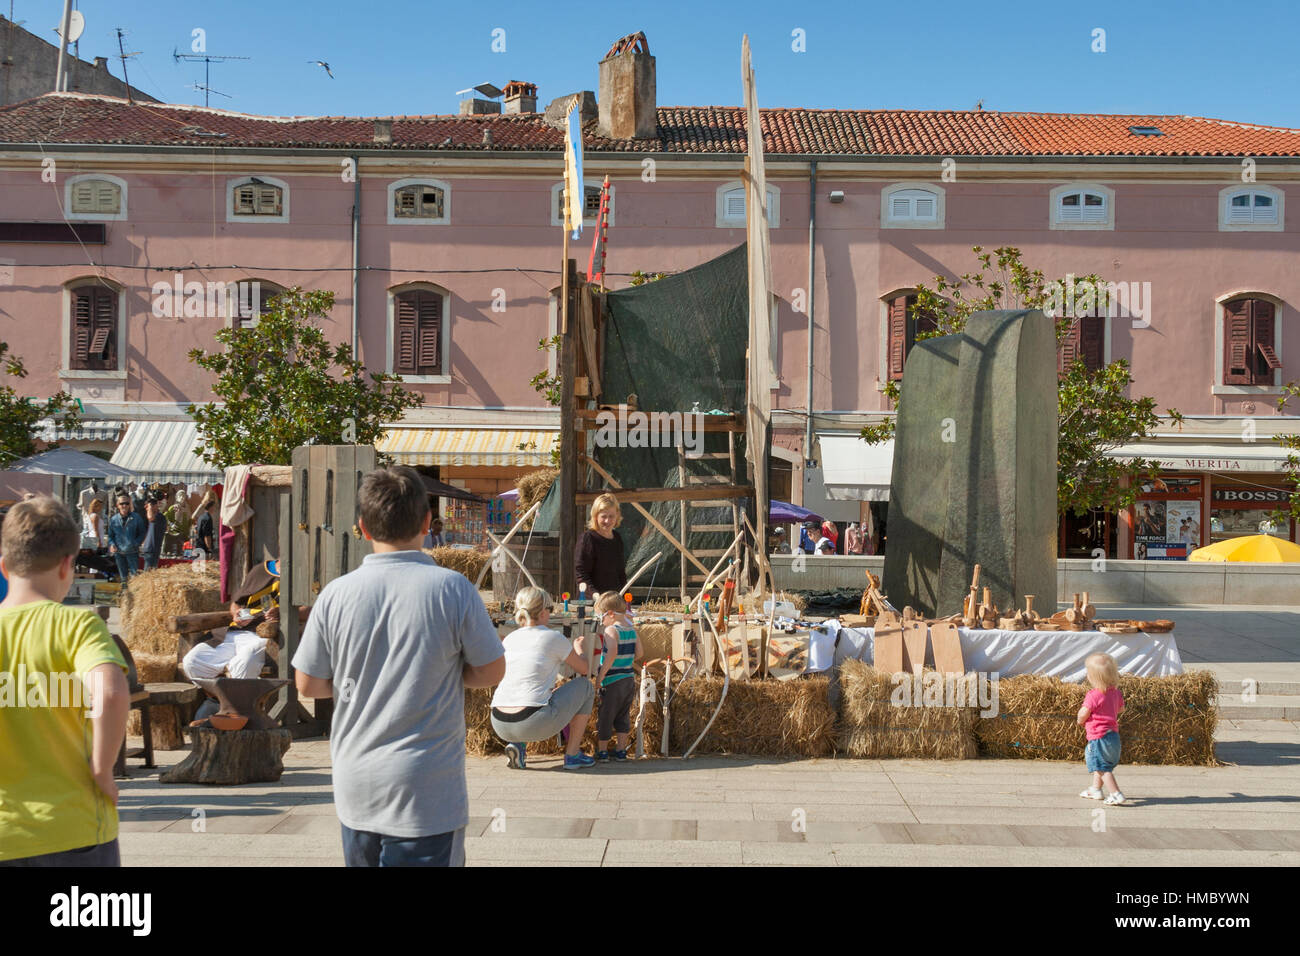 POREC, Kroatien - 14. September 2014: Unkenntlich Menschen besuchen Straßenmarkt am 8. historische Festival Giostra. Festival ergibt sich aus historischen Tatsache Stockfoto